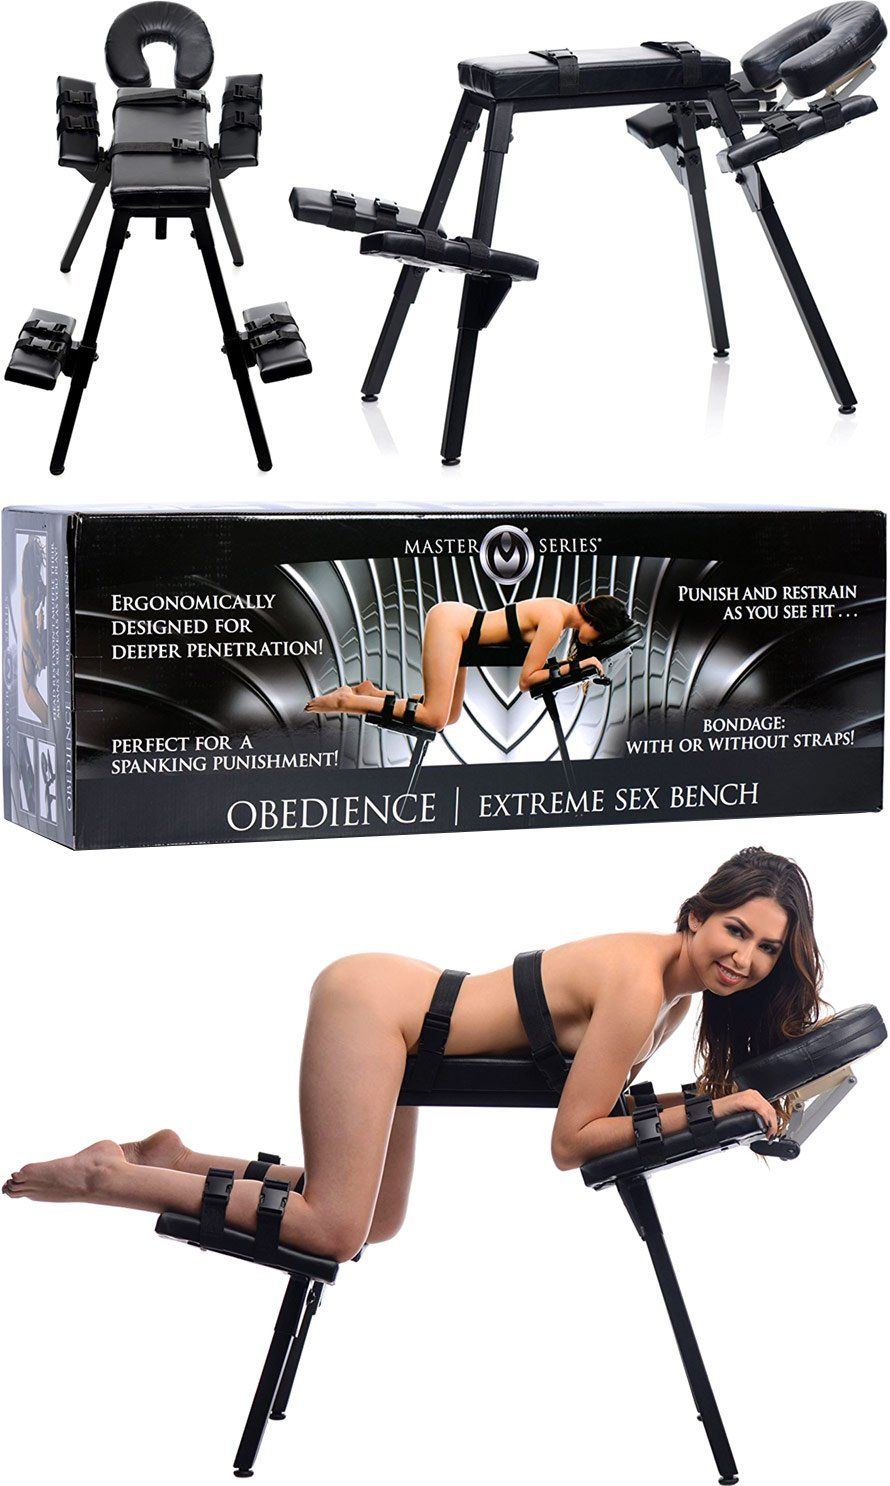 Bdsm bondage fetish restraint spank